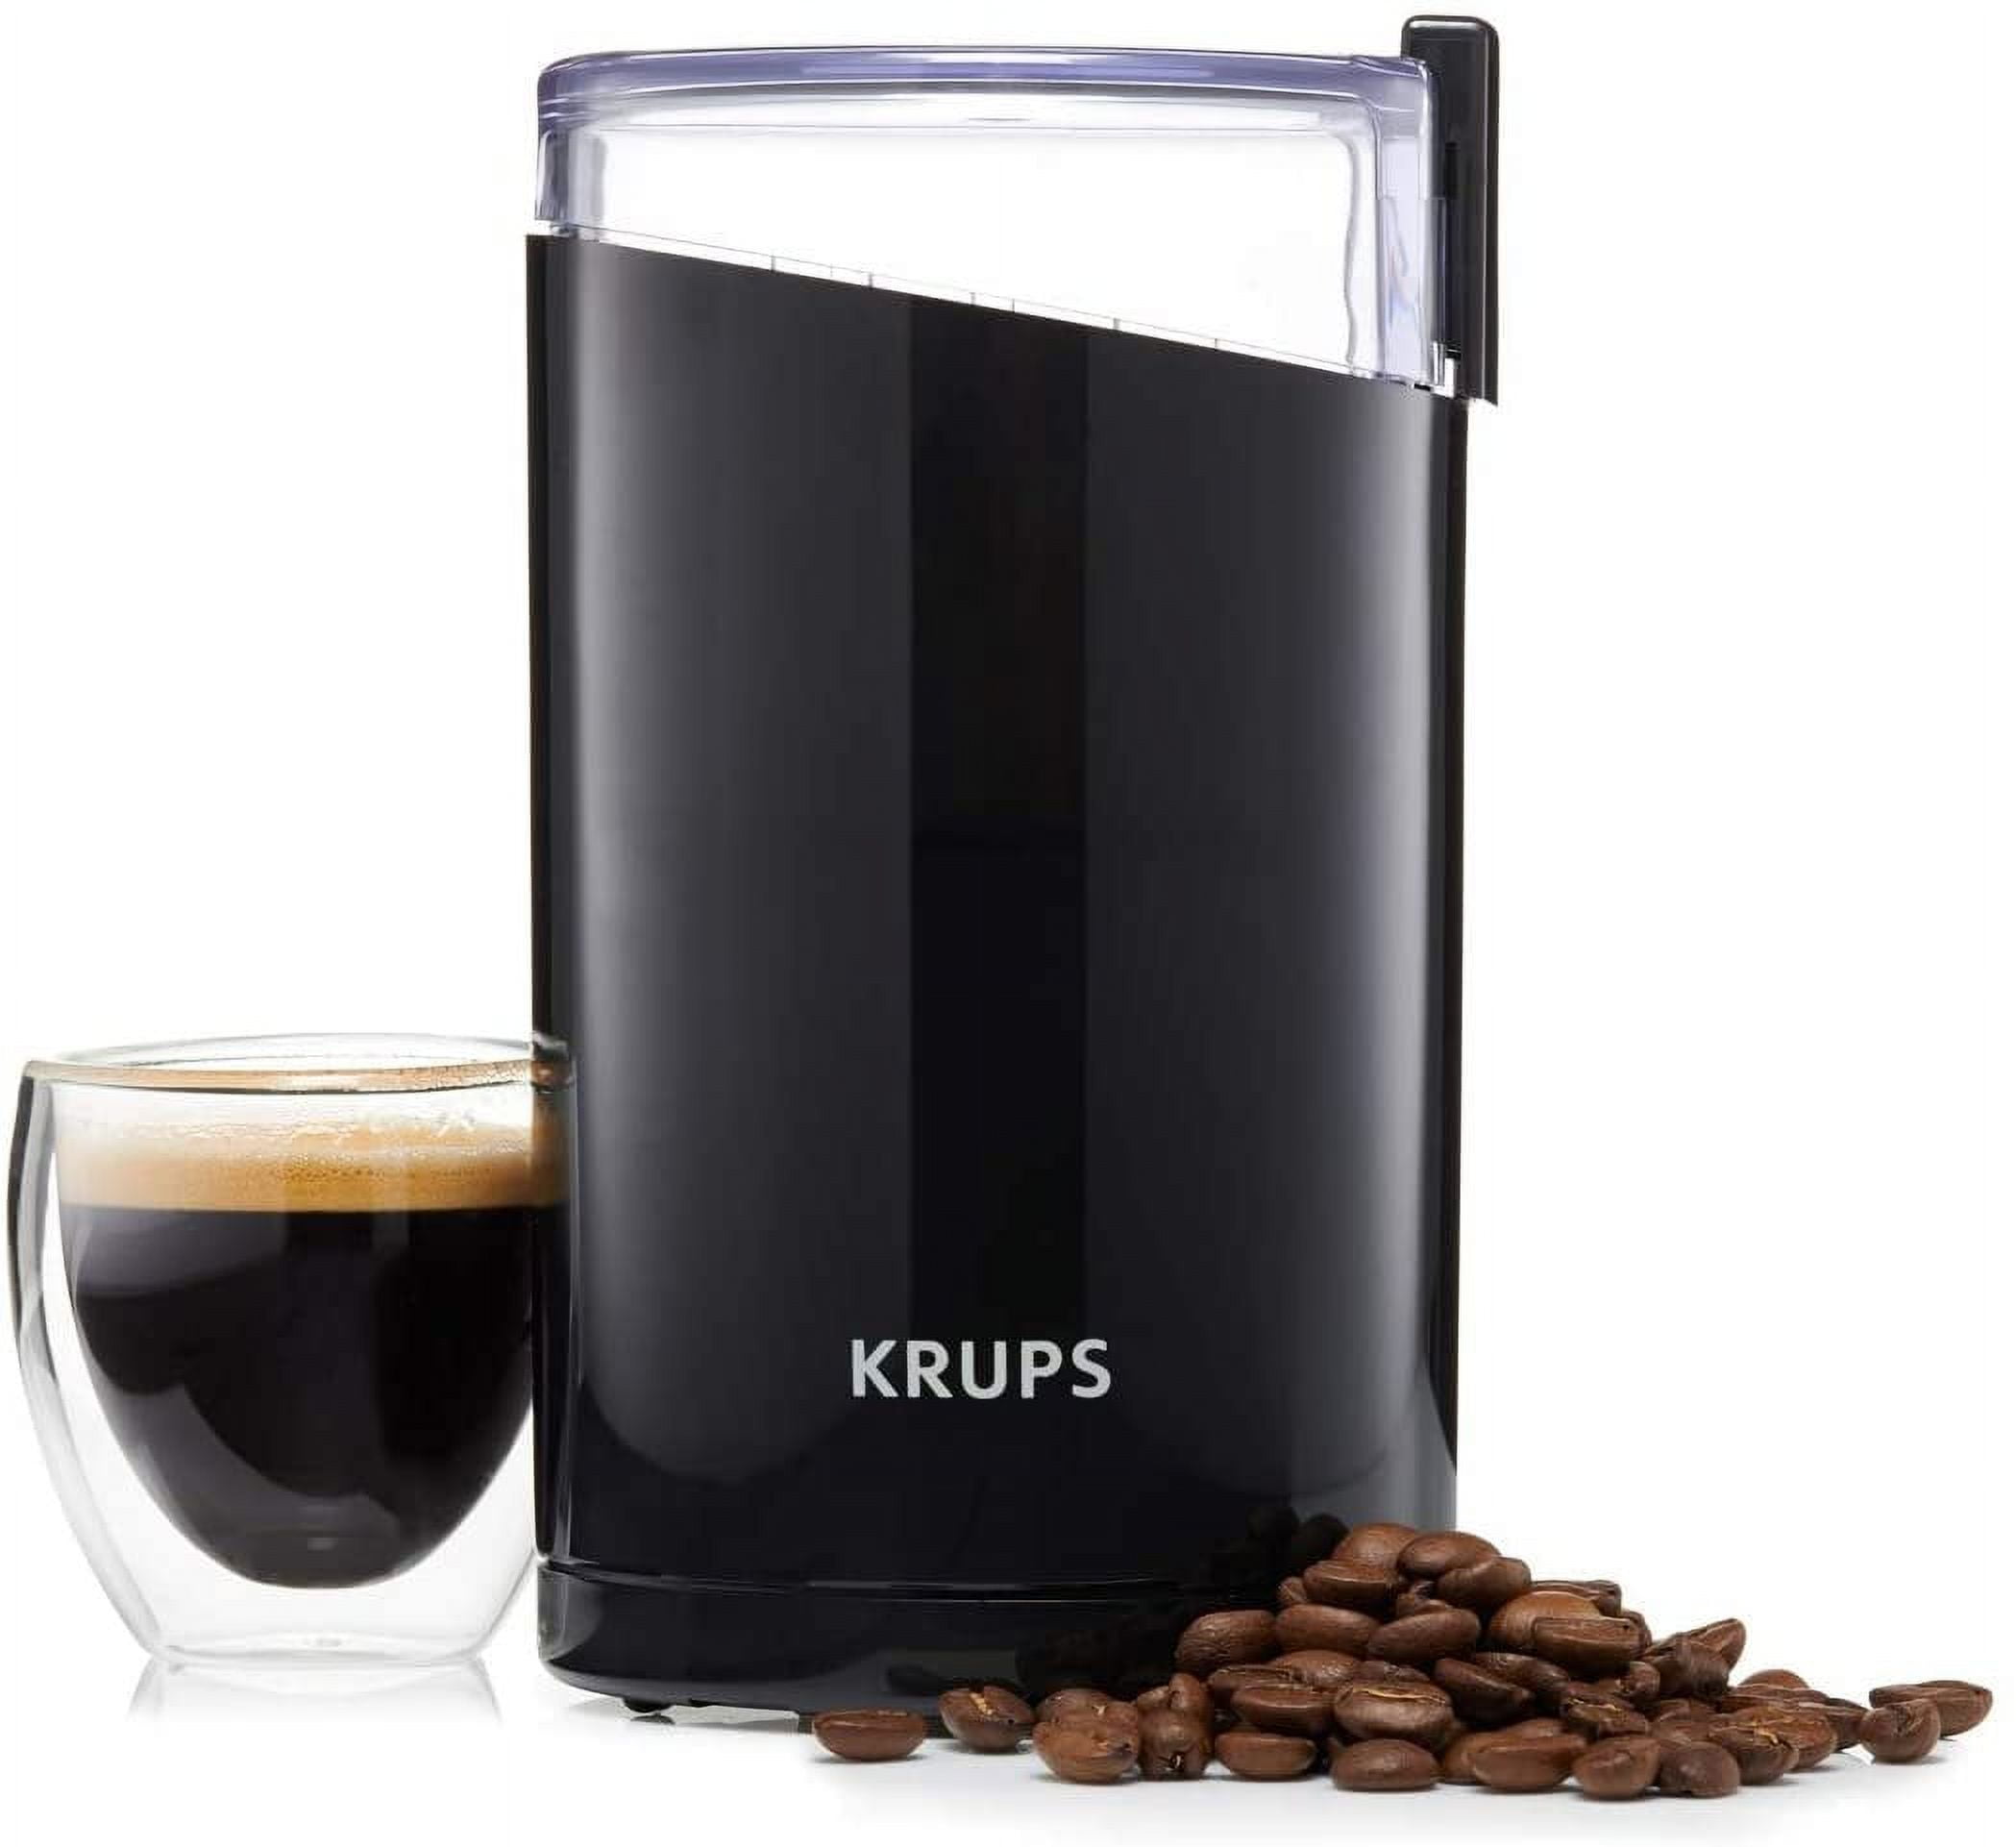 Krups 3 oz. Black Blade Coffee Grinder and Spice Grinder F20342